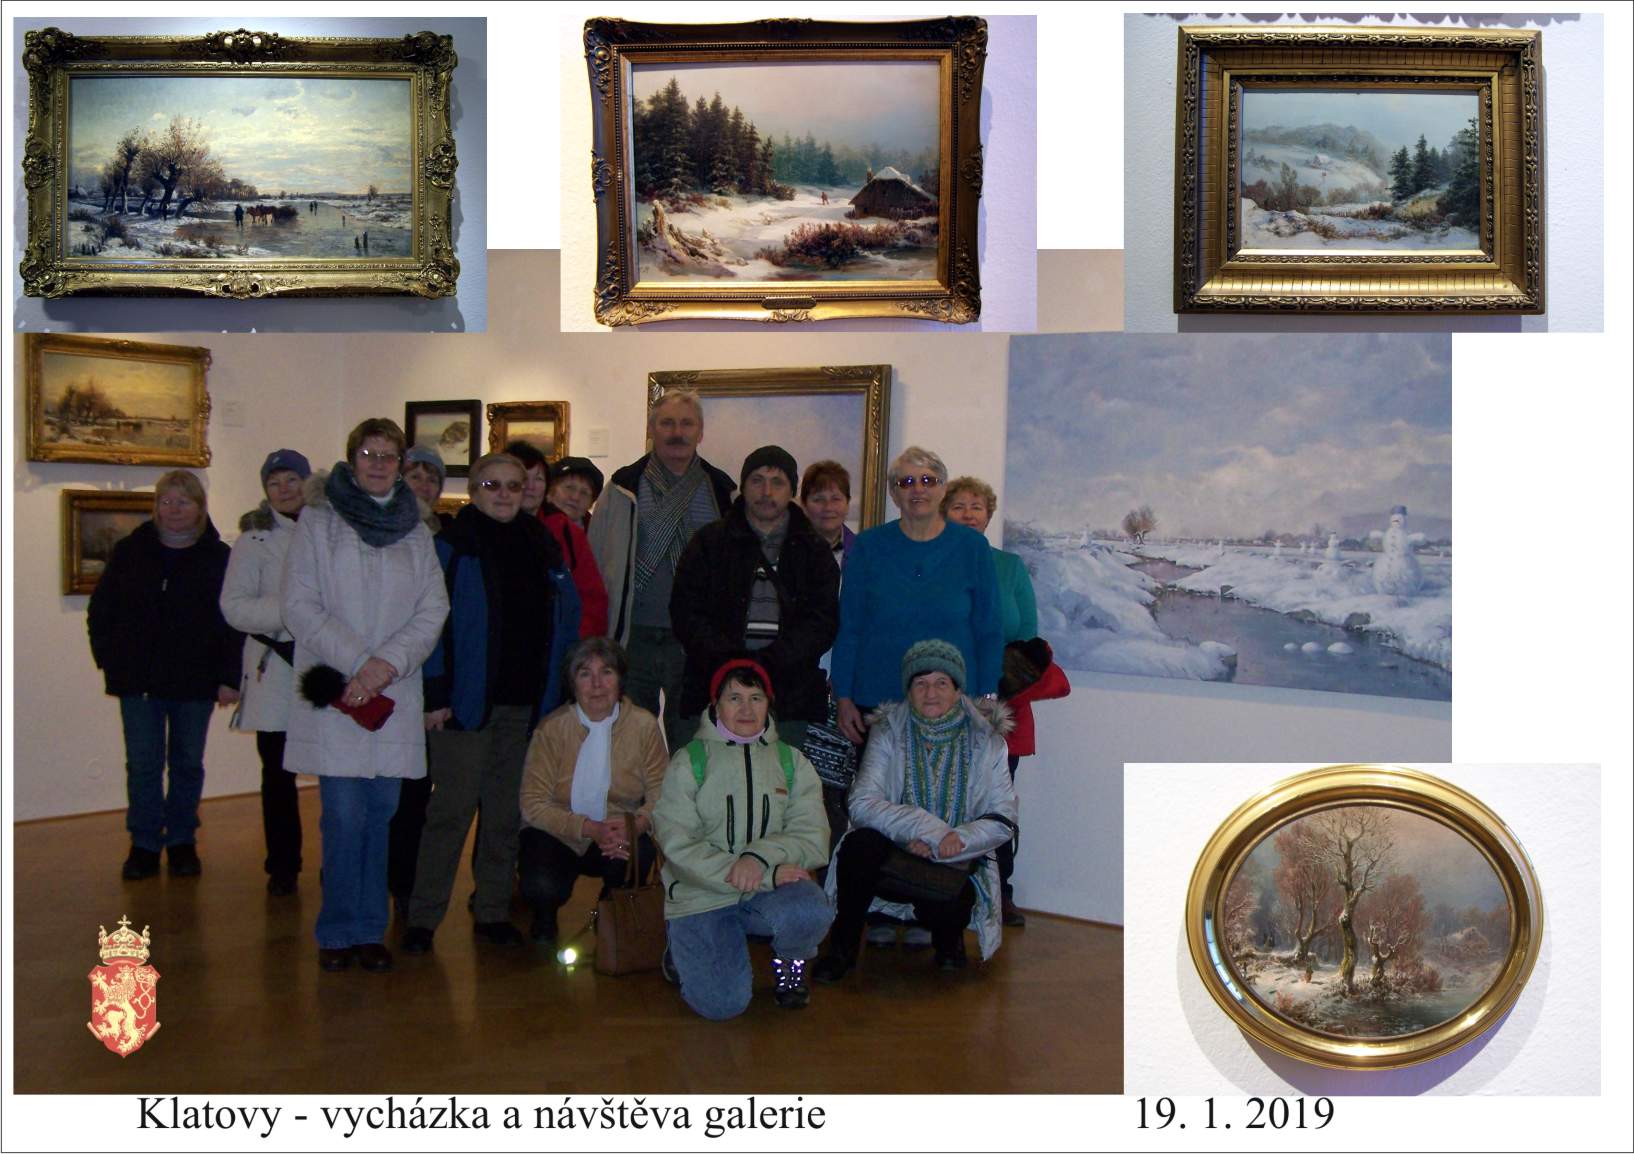 Lednová vycházka po městě s návštěvou místní galerie, kde byla expozice na zimní téma.